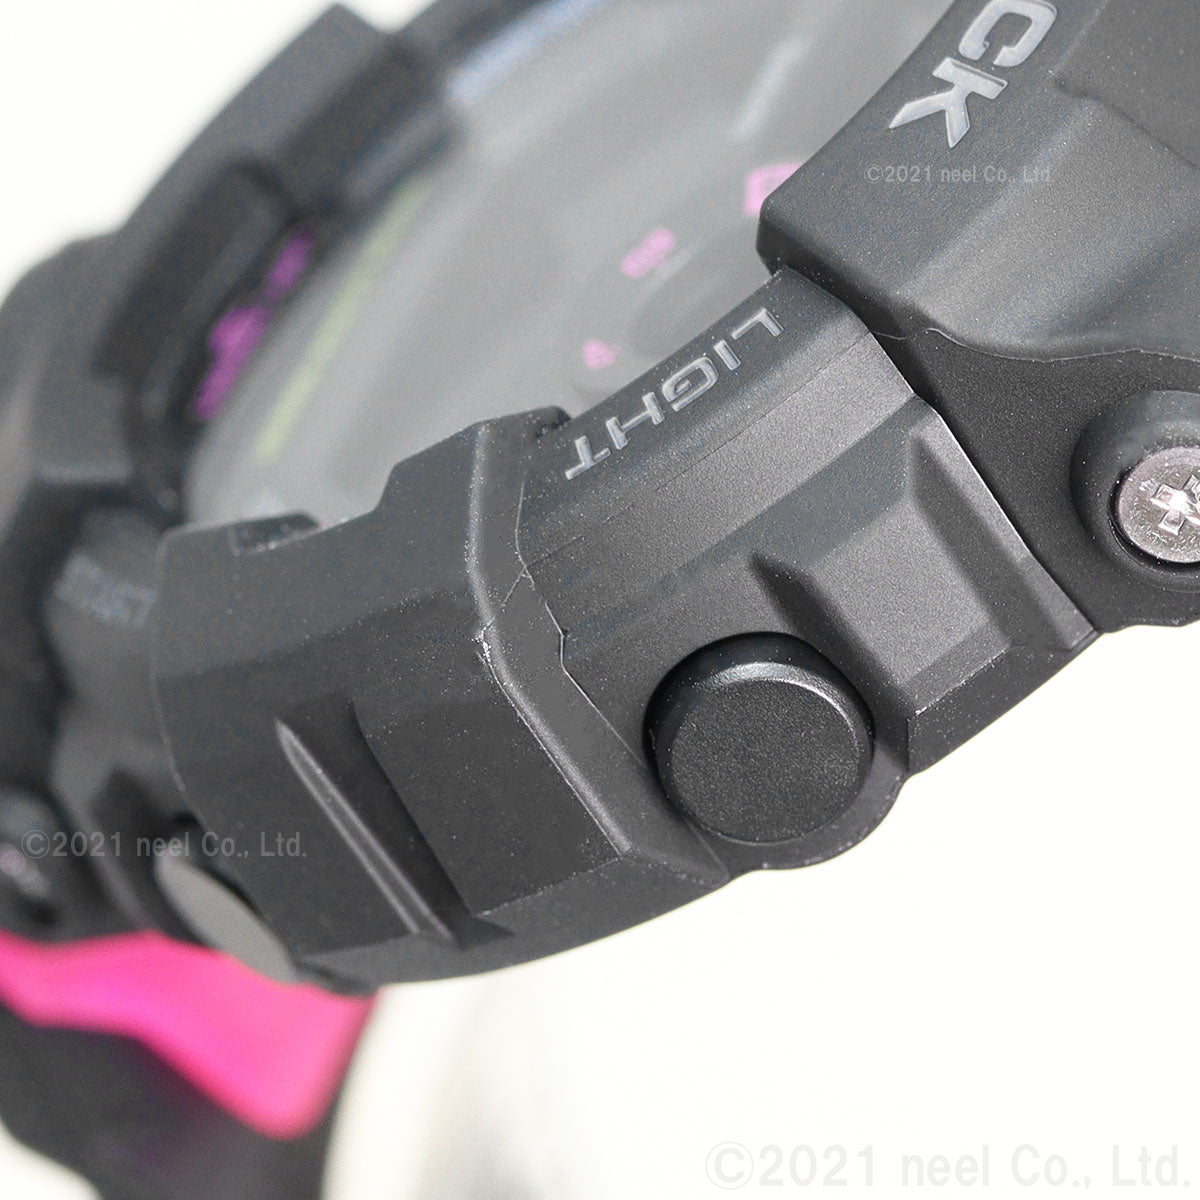 G-SHOCK デジタル カシオ Gショック CASIO 腕時計 メンズ GMD-B800SC-1JF